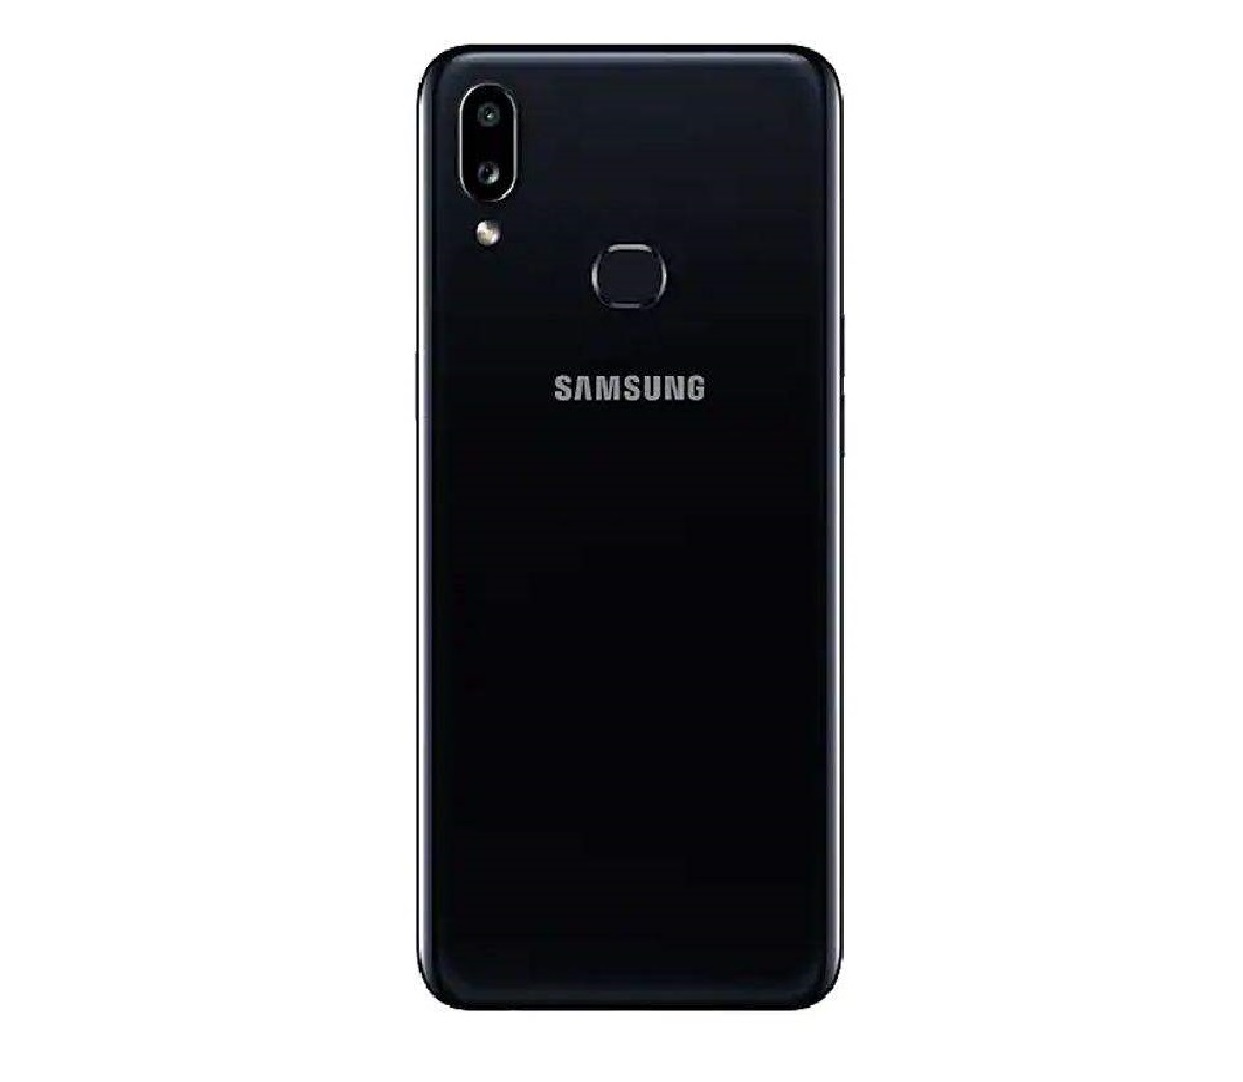  گوشی موبایل سامسونگ مدل Galaxy A10s  دو سیم کارت ظرفیت 32 گیگابایت